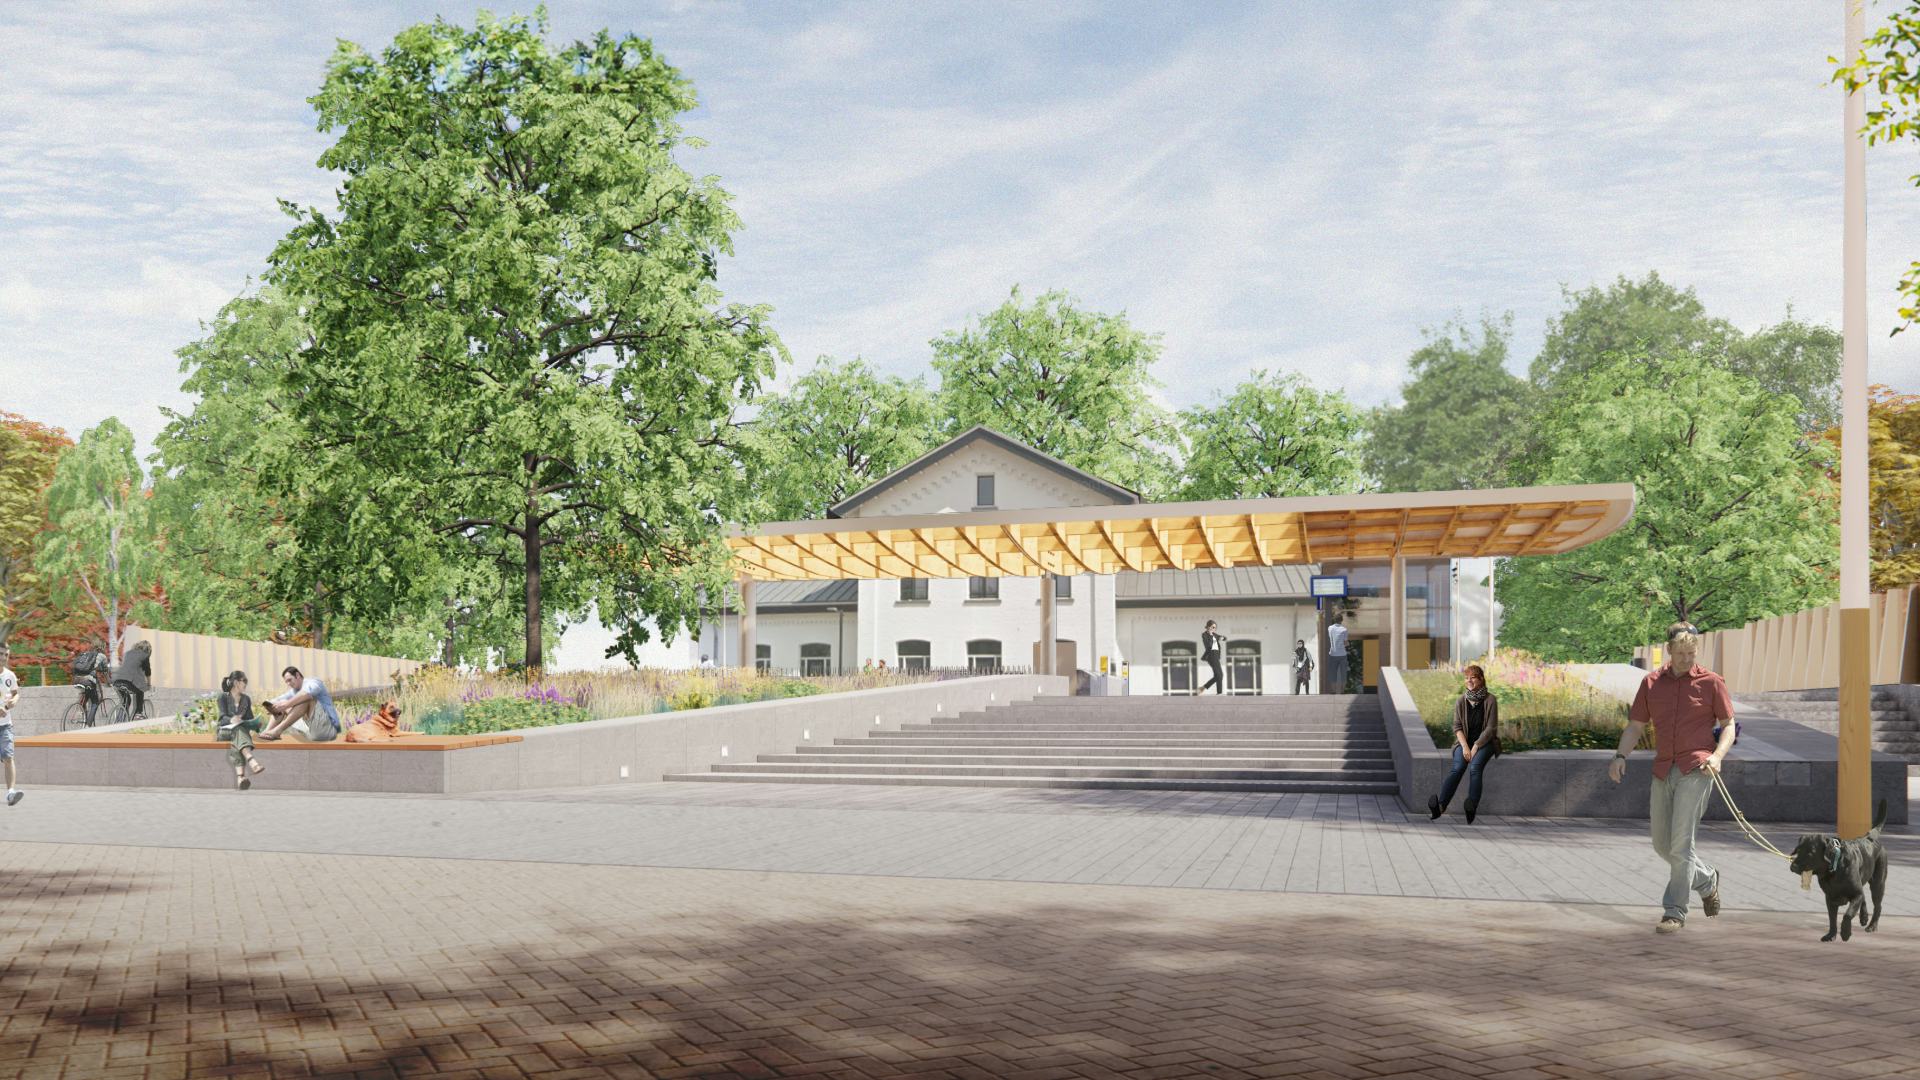 Station Vught wordt vernieuwd door NEXT architects i.s.m. MTD Landschapsarchitecten